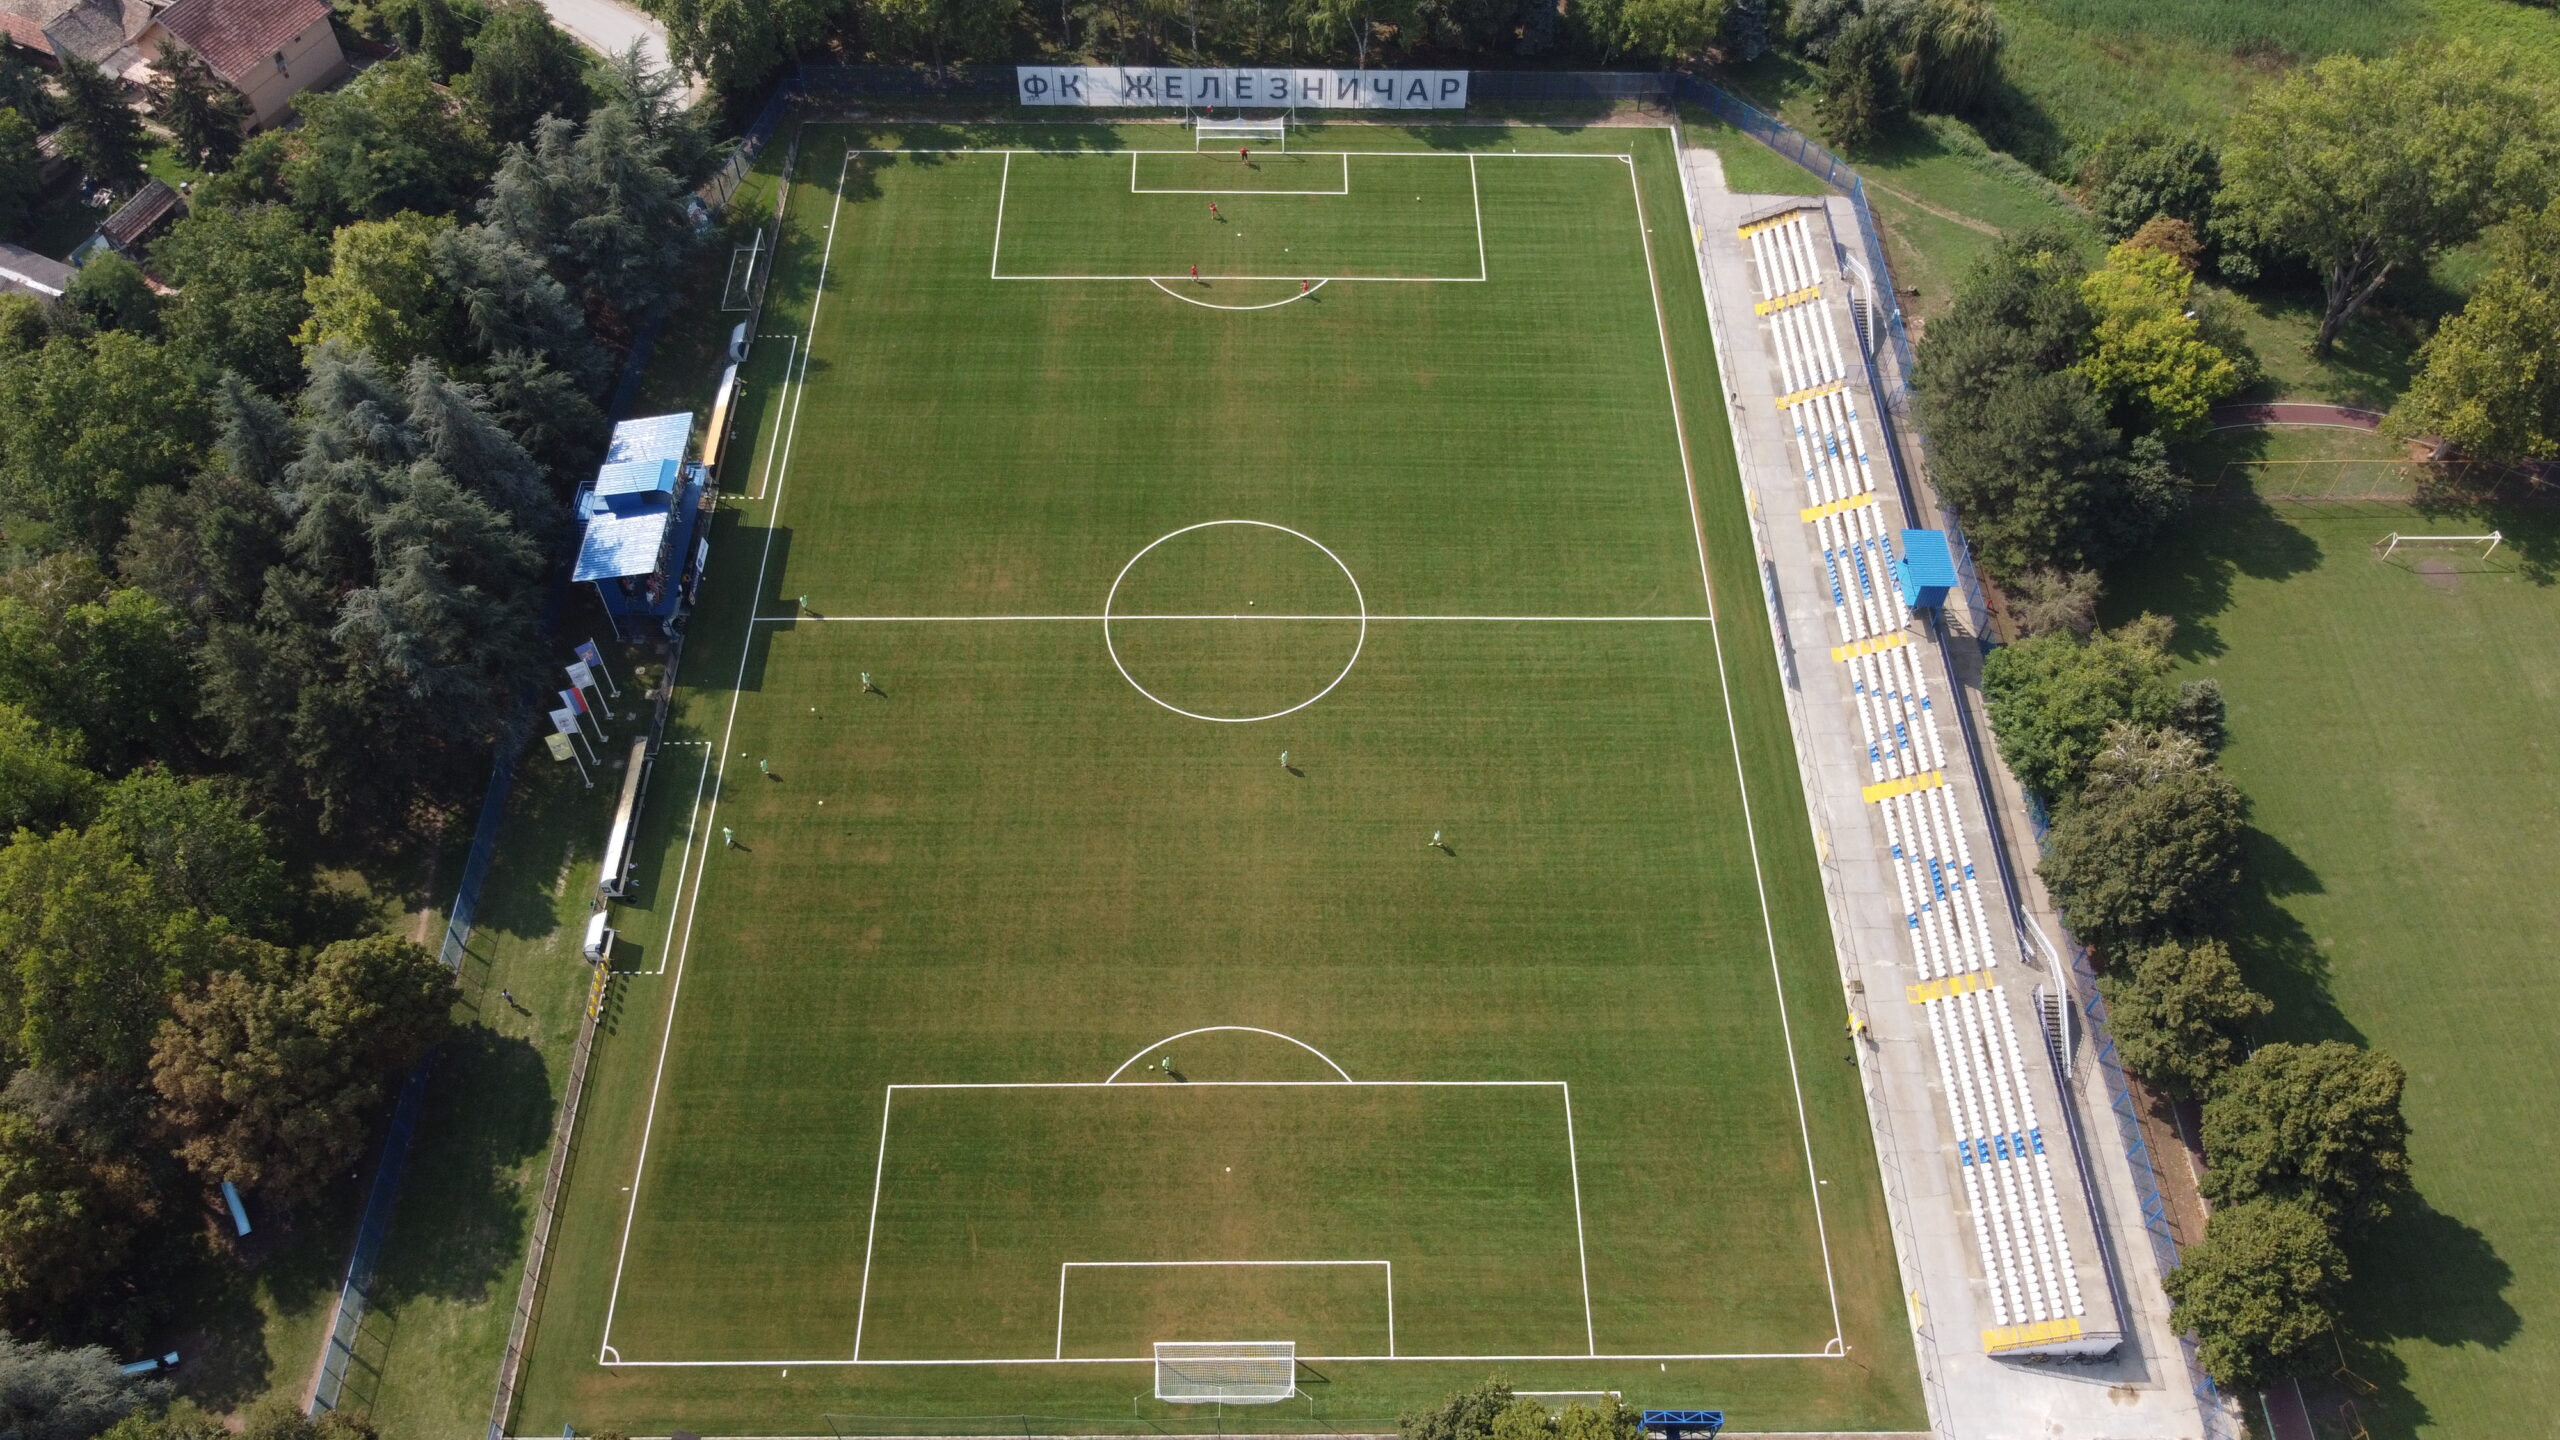 FK Železničar Pančevo (@fk_zeleznicar_pancevo) • Instagram photos